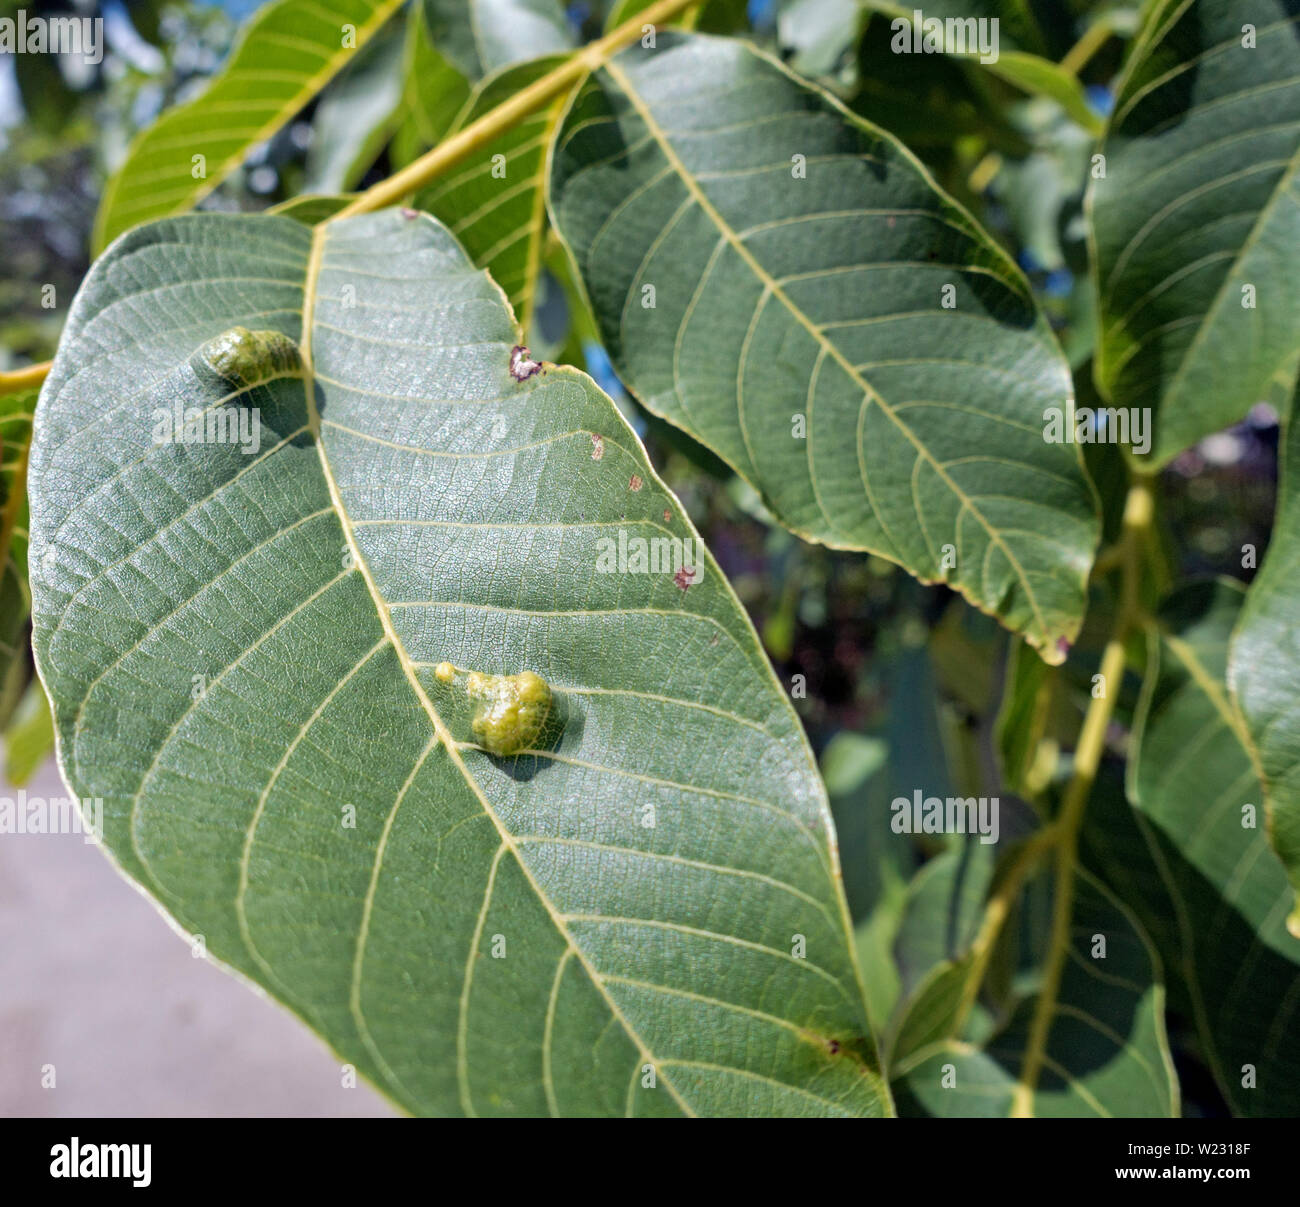 Gall wasp eggs and larvae or grubs on walnut tree leaves. Cynipidae. larva, grub. Stock Photo